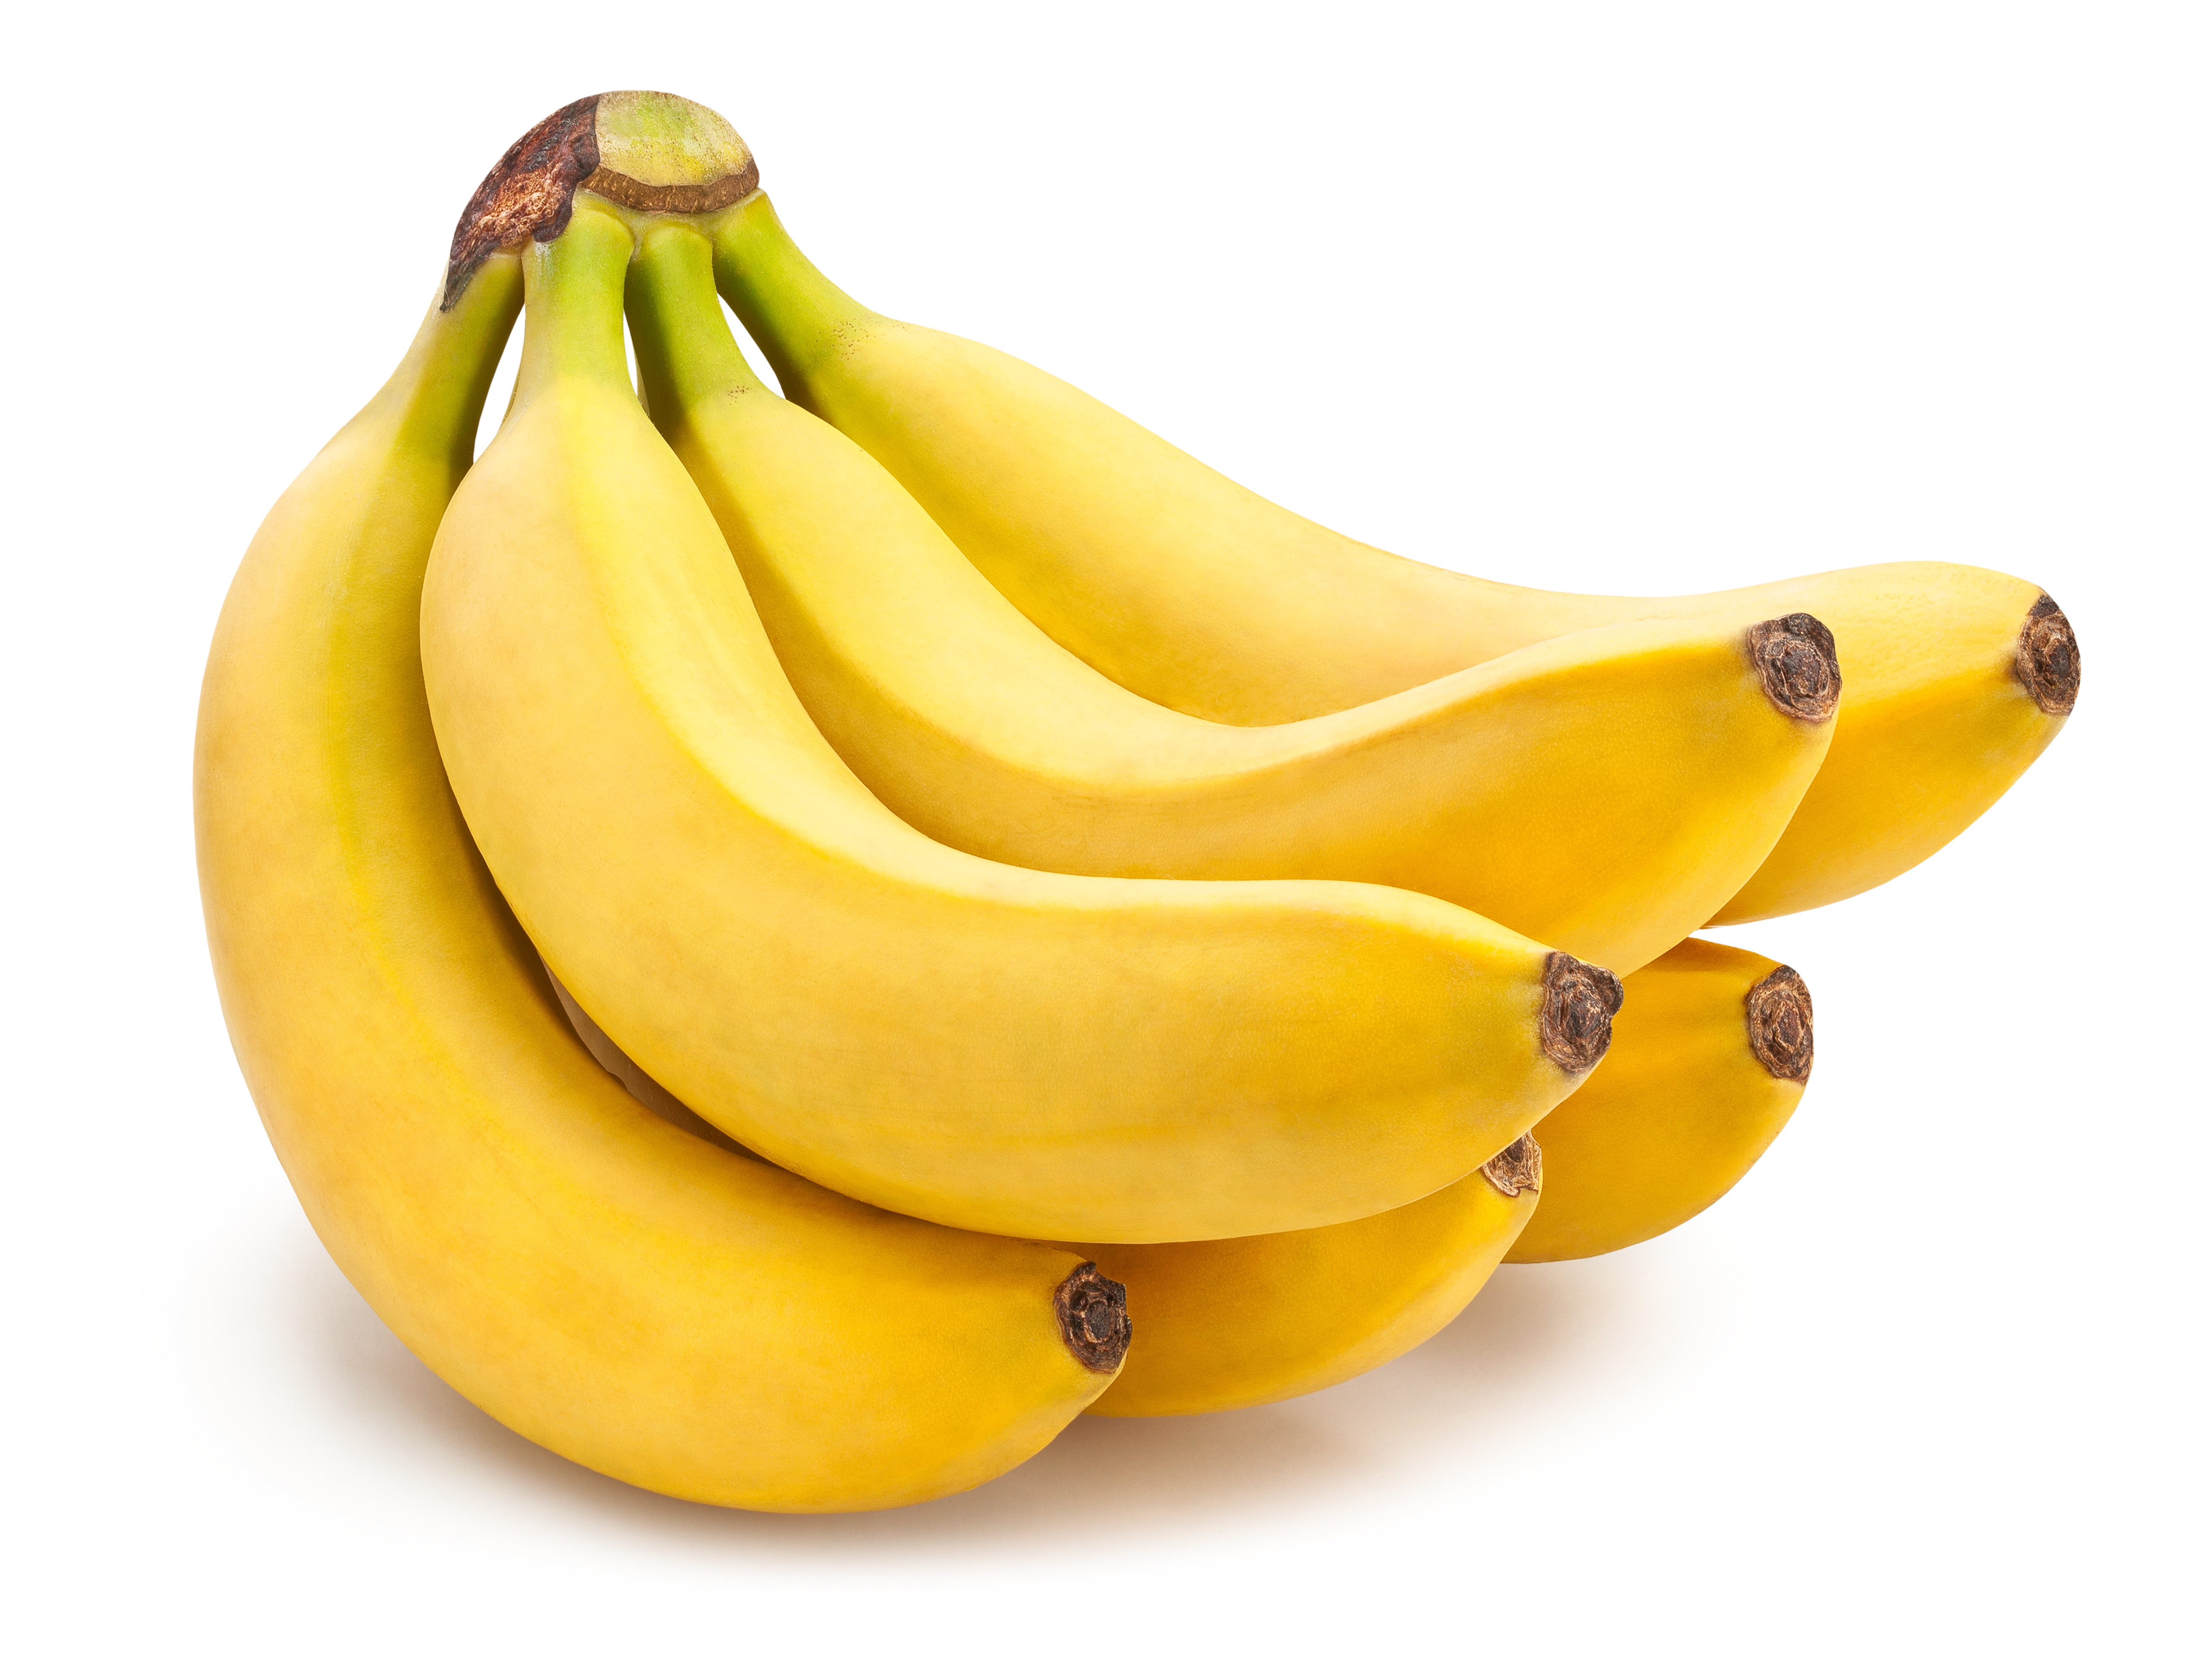 banana benefits in periods